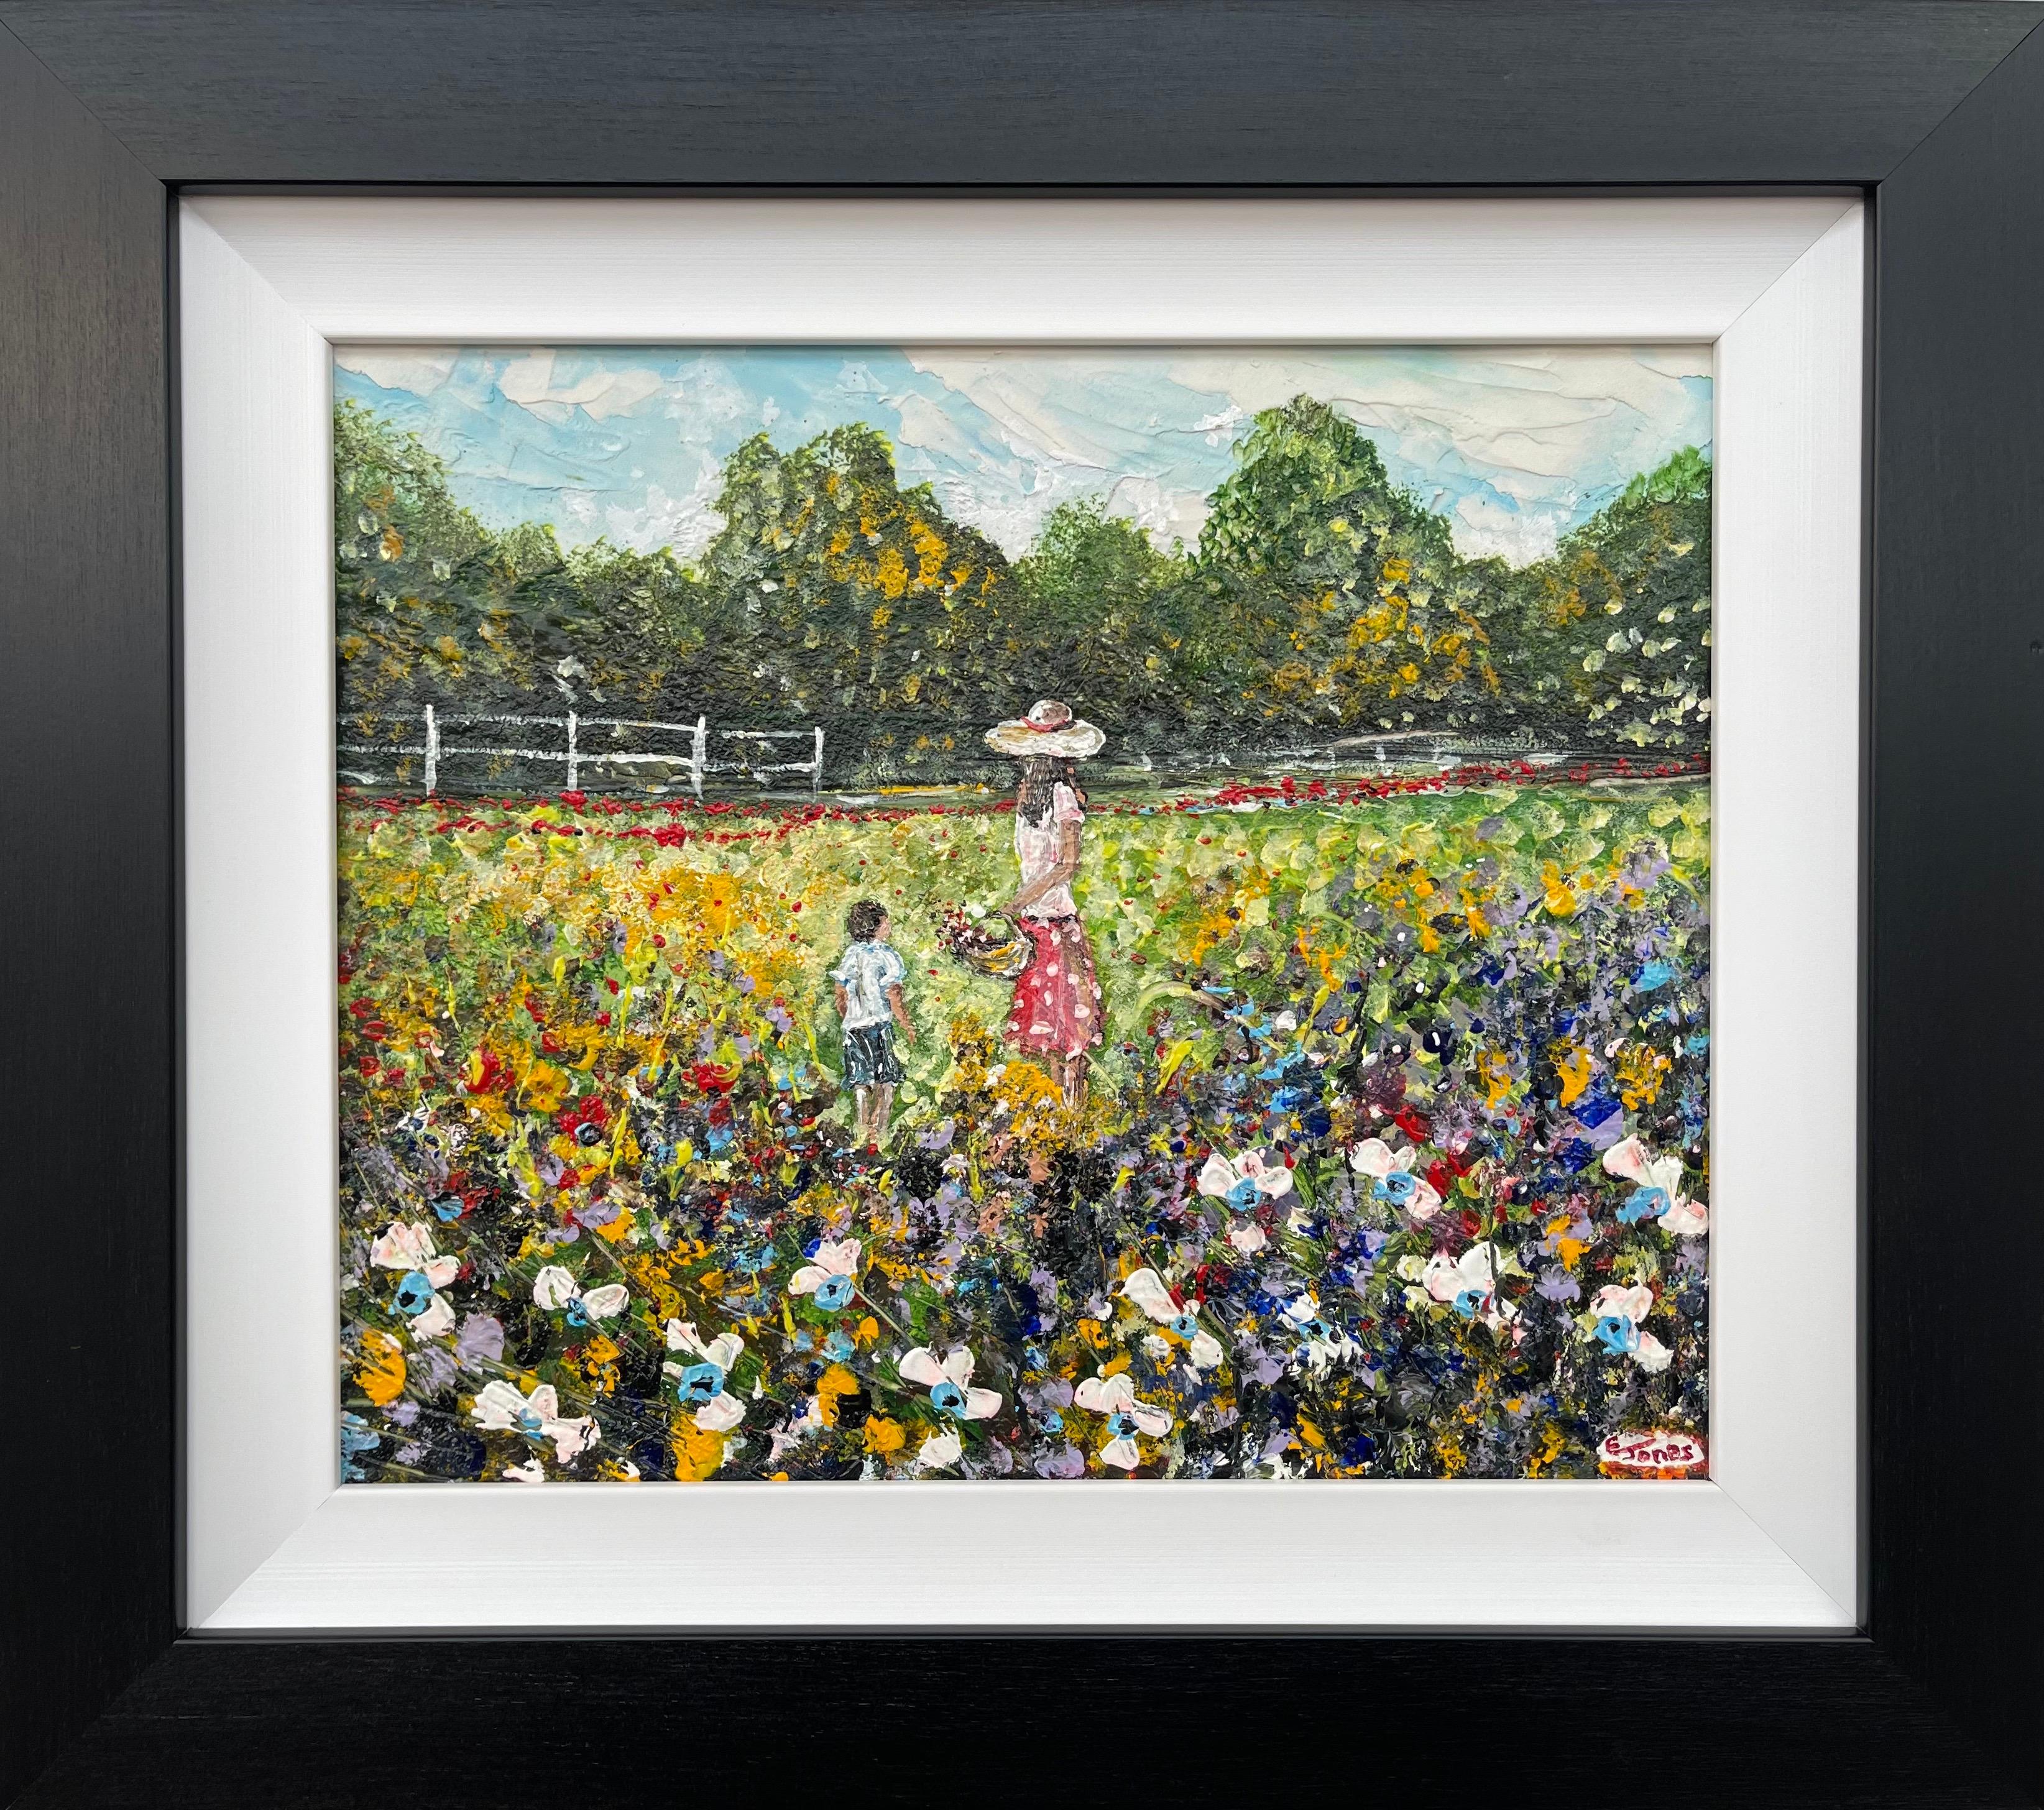 Figurative Painting Emma Jones - Peinture d'une mère et d'un enfant cueillant des fleurs sauvages par un artiste irlandais contemporain